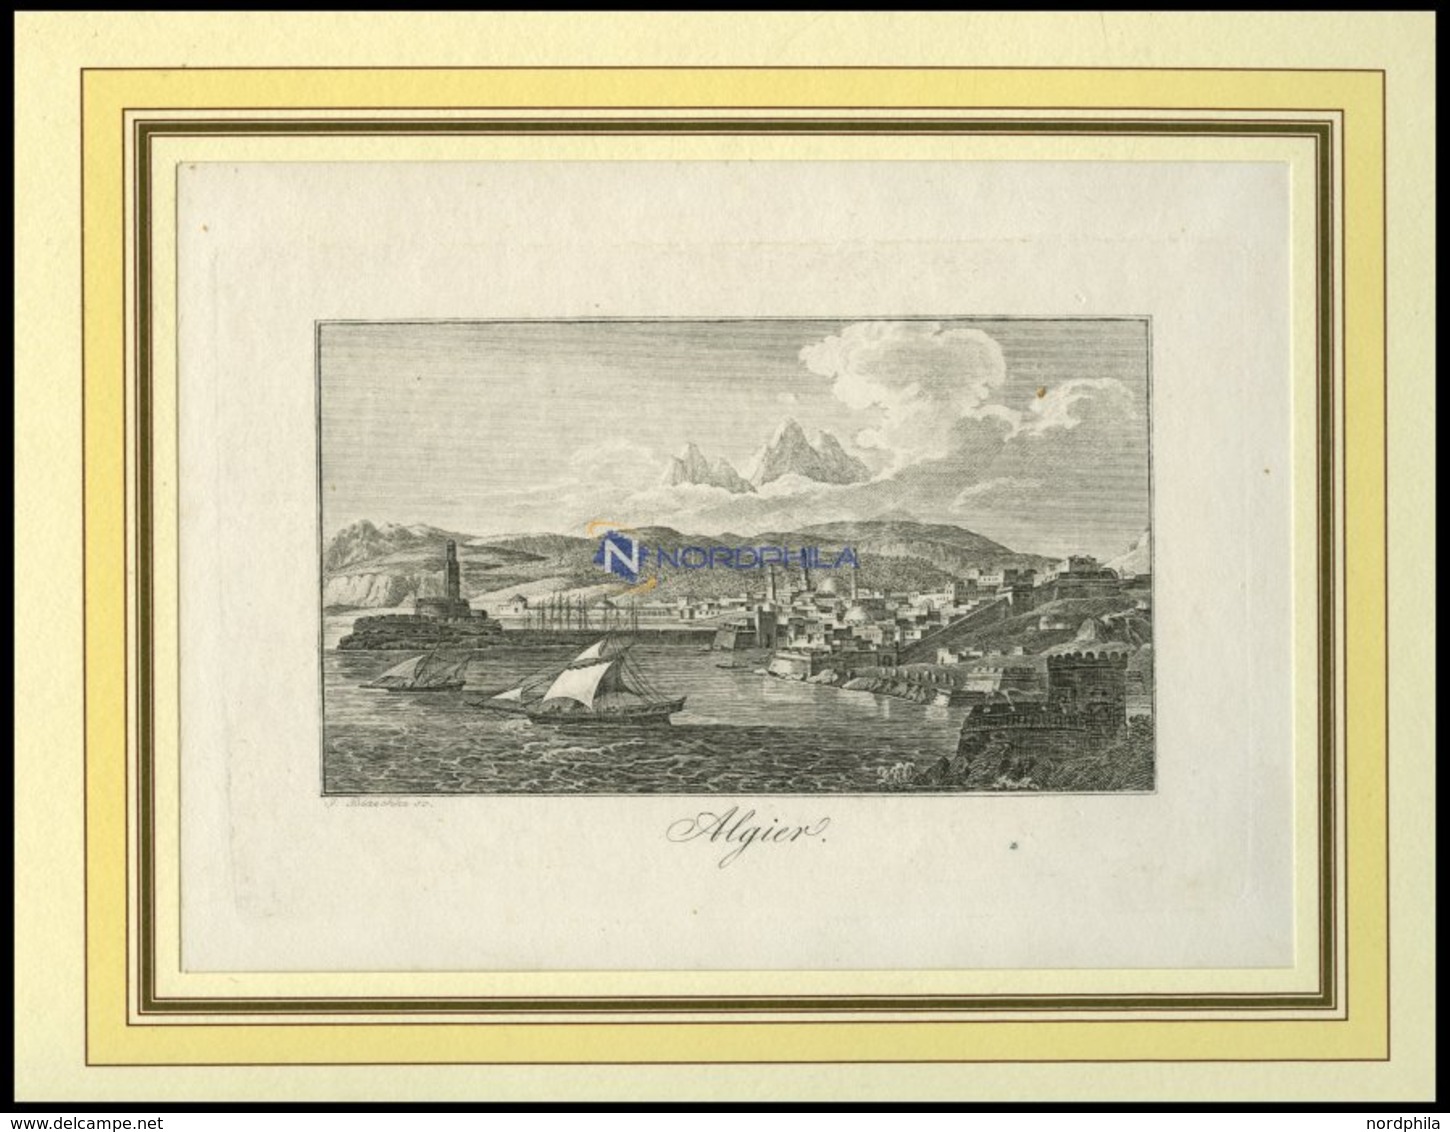 ALGERIEN: Algier, Gesamtansicht, Kupferstich Von Blaschke Um 1830 - Litografía